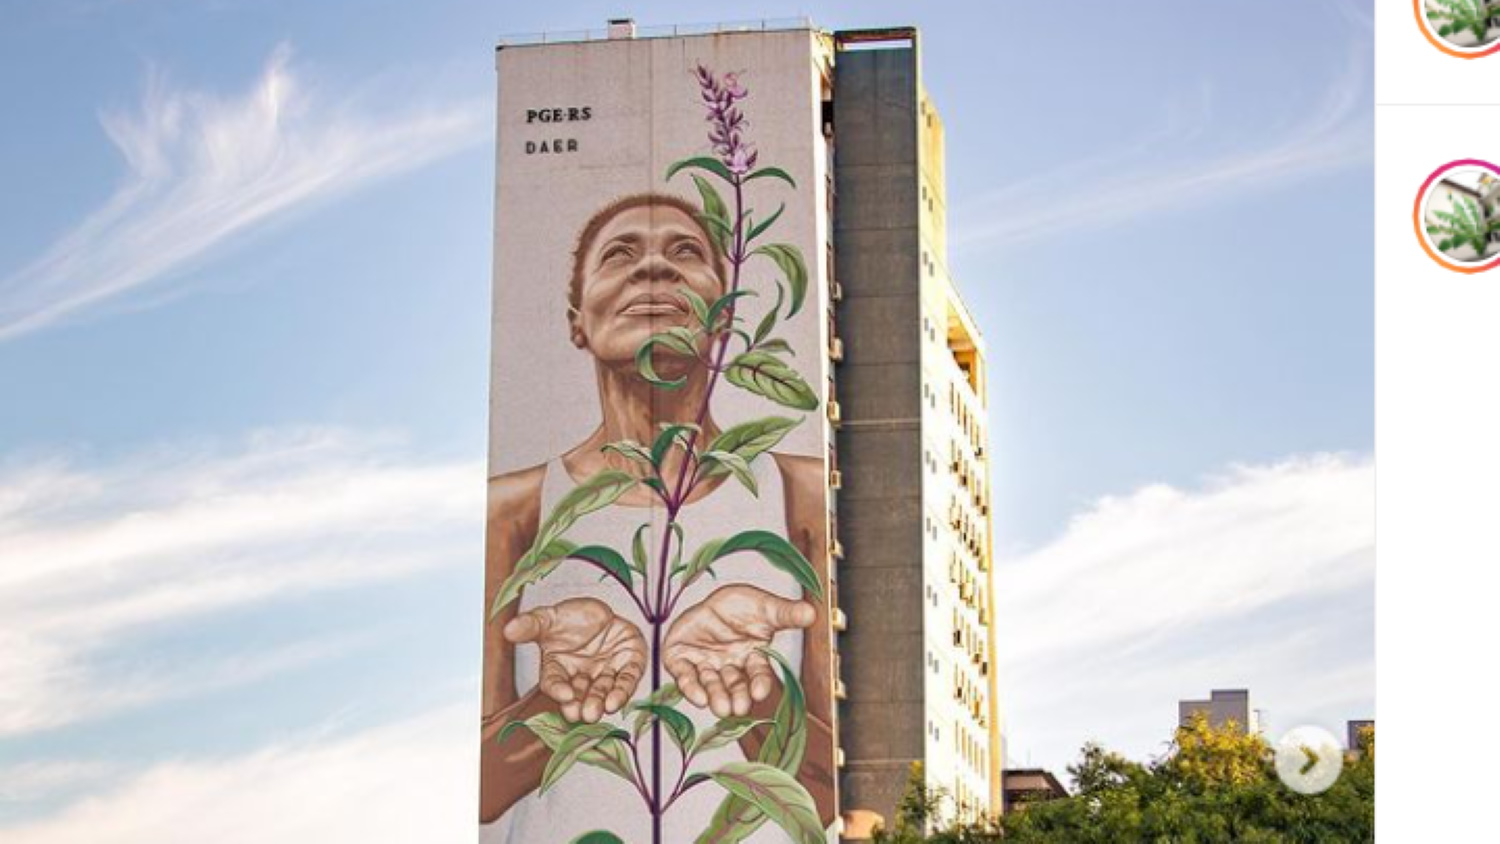 Βραζιλία: Μια σημαντική τοιχογραφία για την ταυτότητα, την κουλτούρα και τη δικαιοσύνη κοσμεί το Πόρτο Αλέγκρε